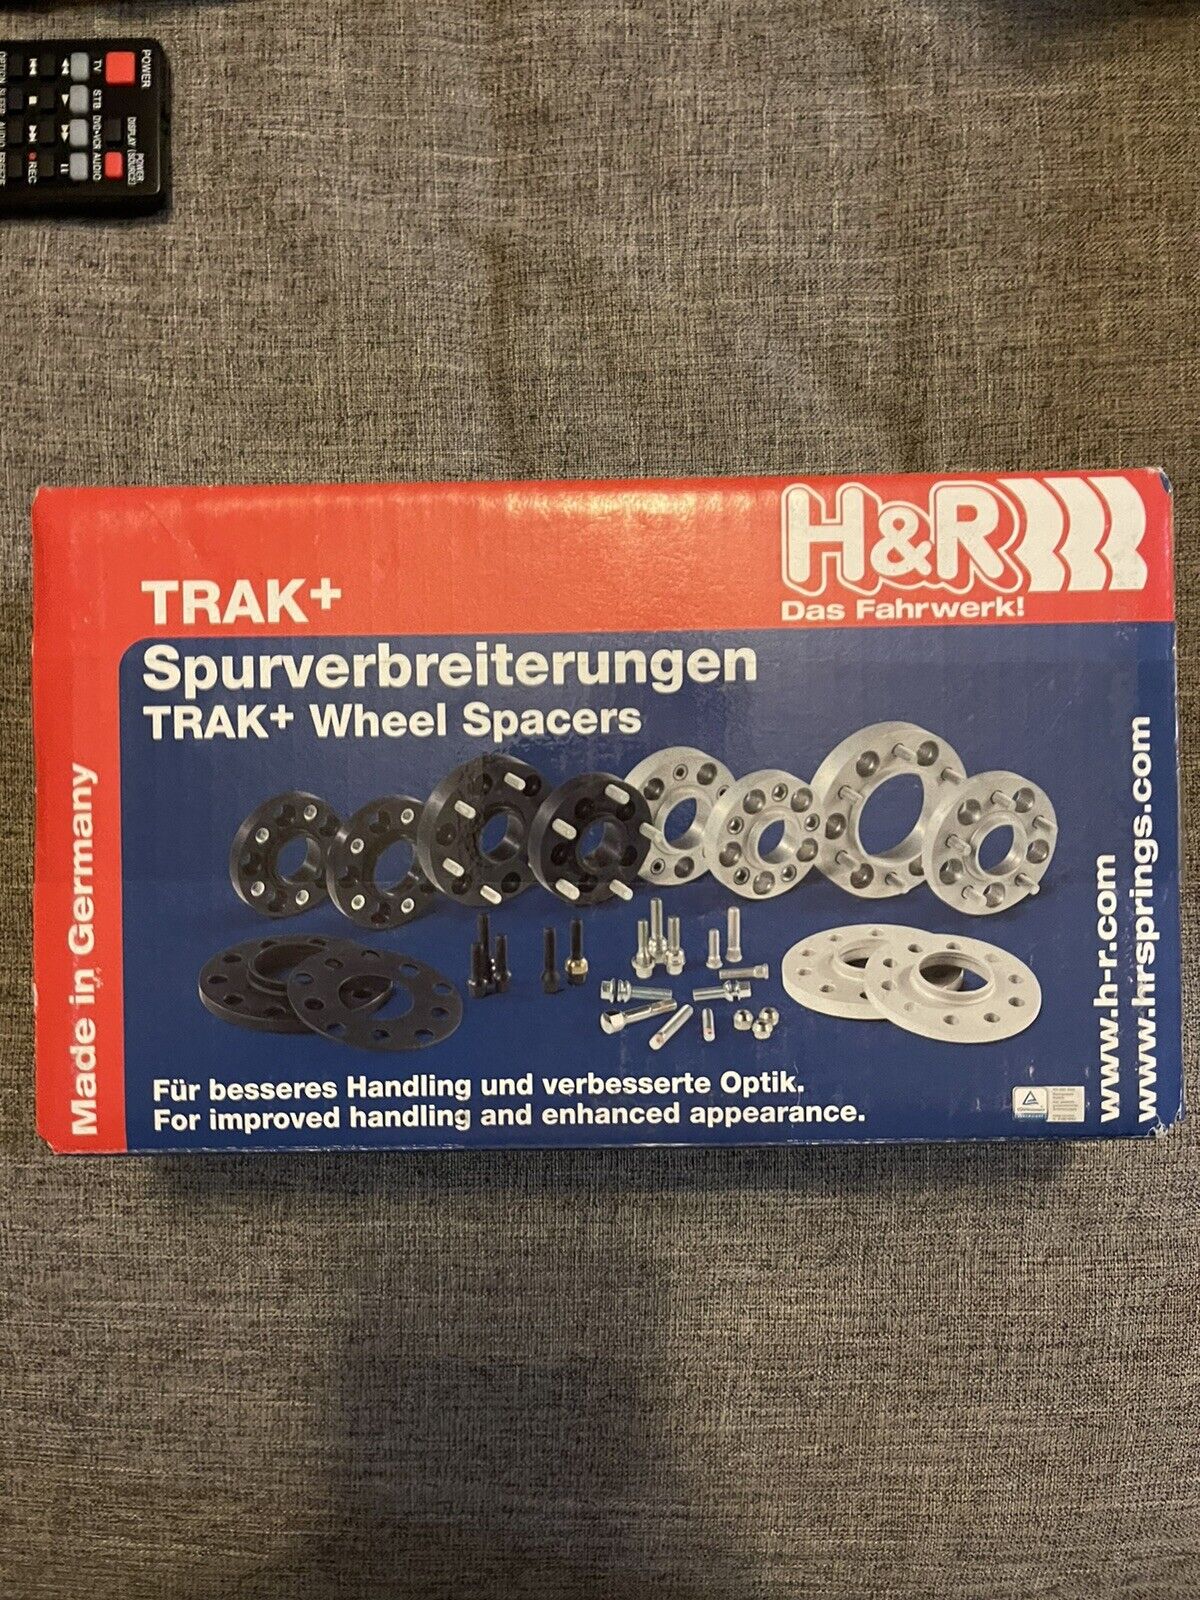 H&R Trak+ Wheel Spacers DRS 15mm 5x114.3 12x1.5 Thread 60.1 Center Bore